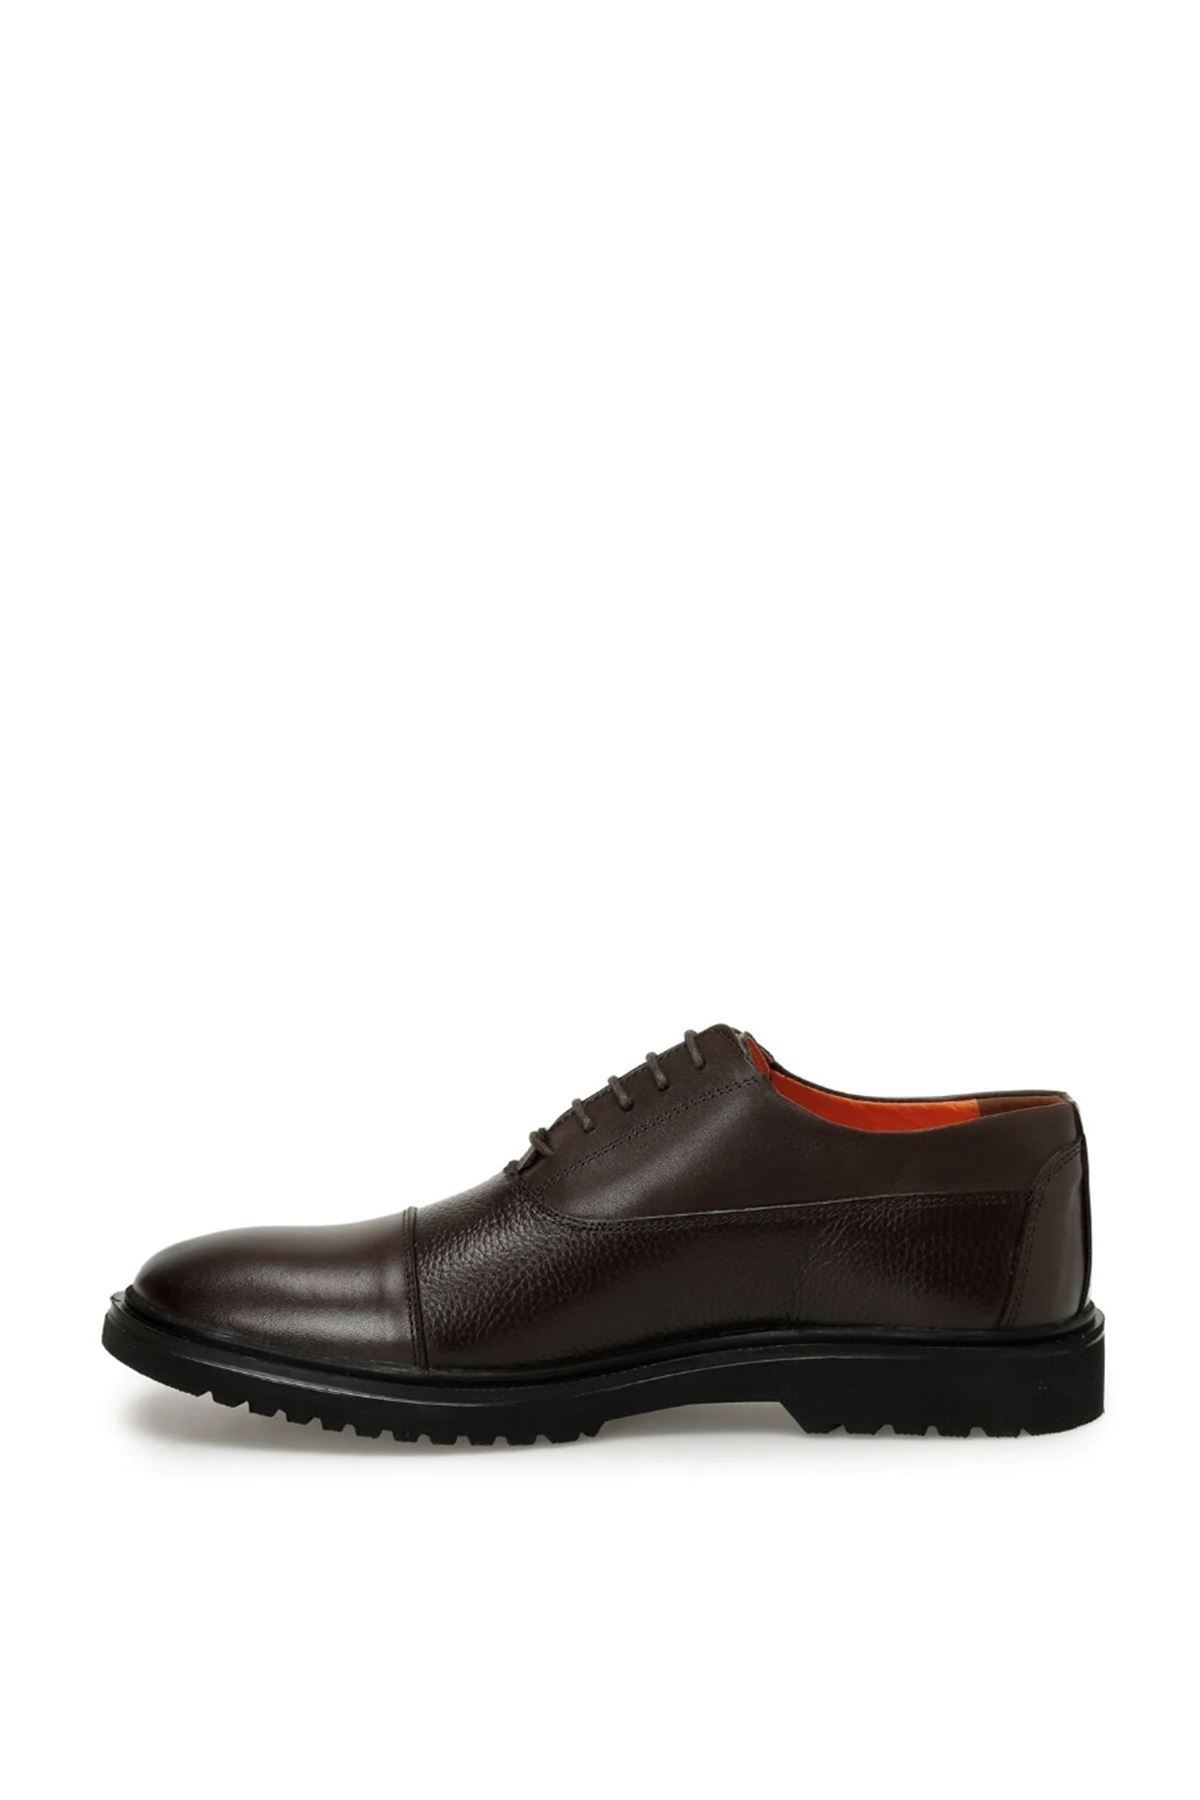 Boy Uzatan Ayakkabı Gizli Topuklu Lotis Kahverengi Erkek Klasik Ayakkabı MYY594